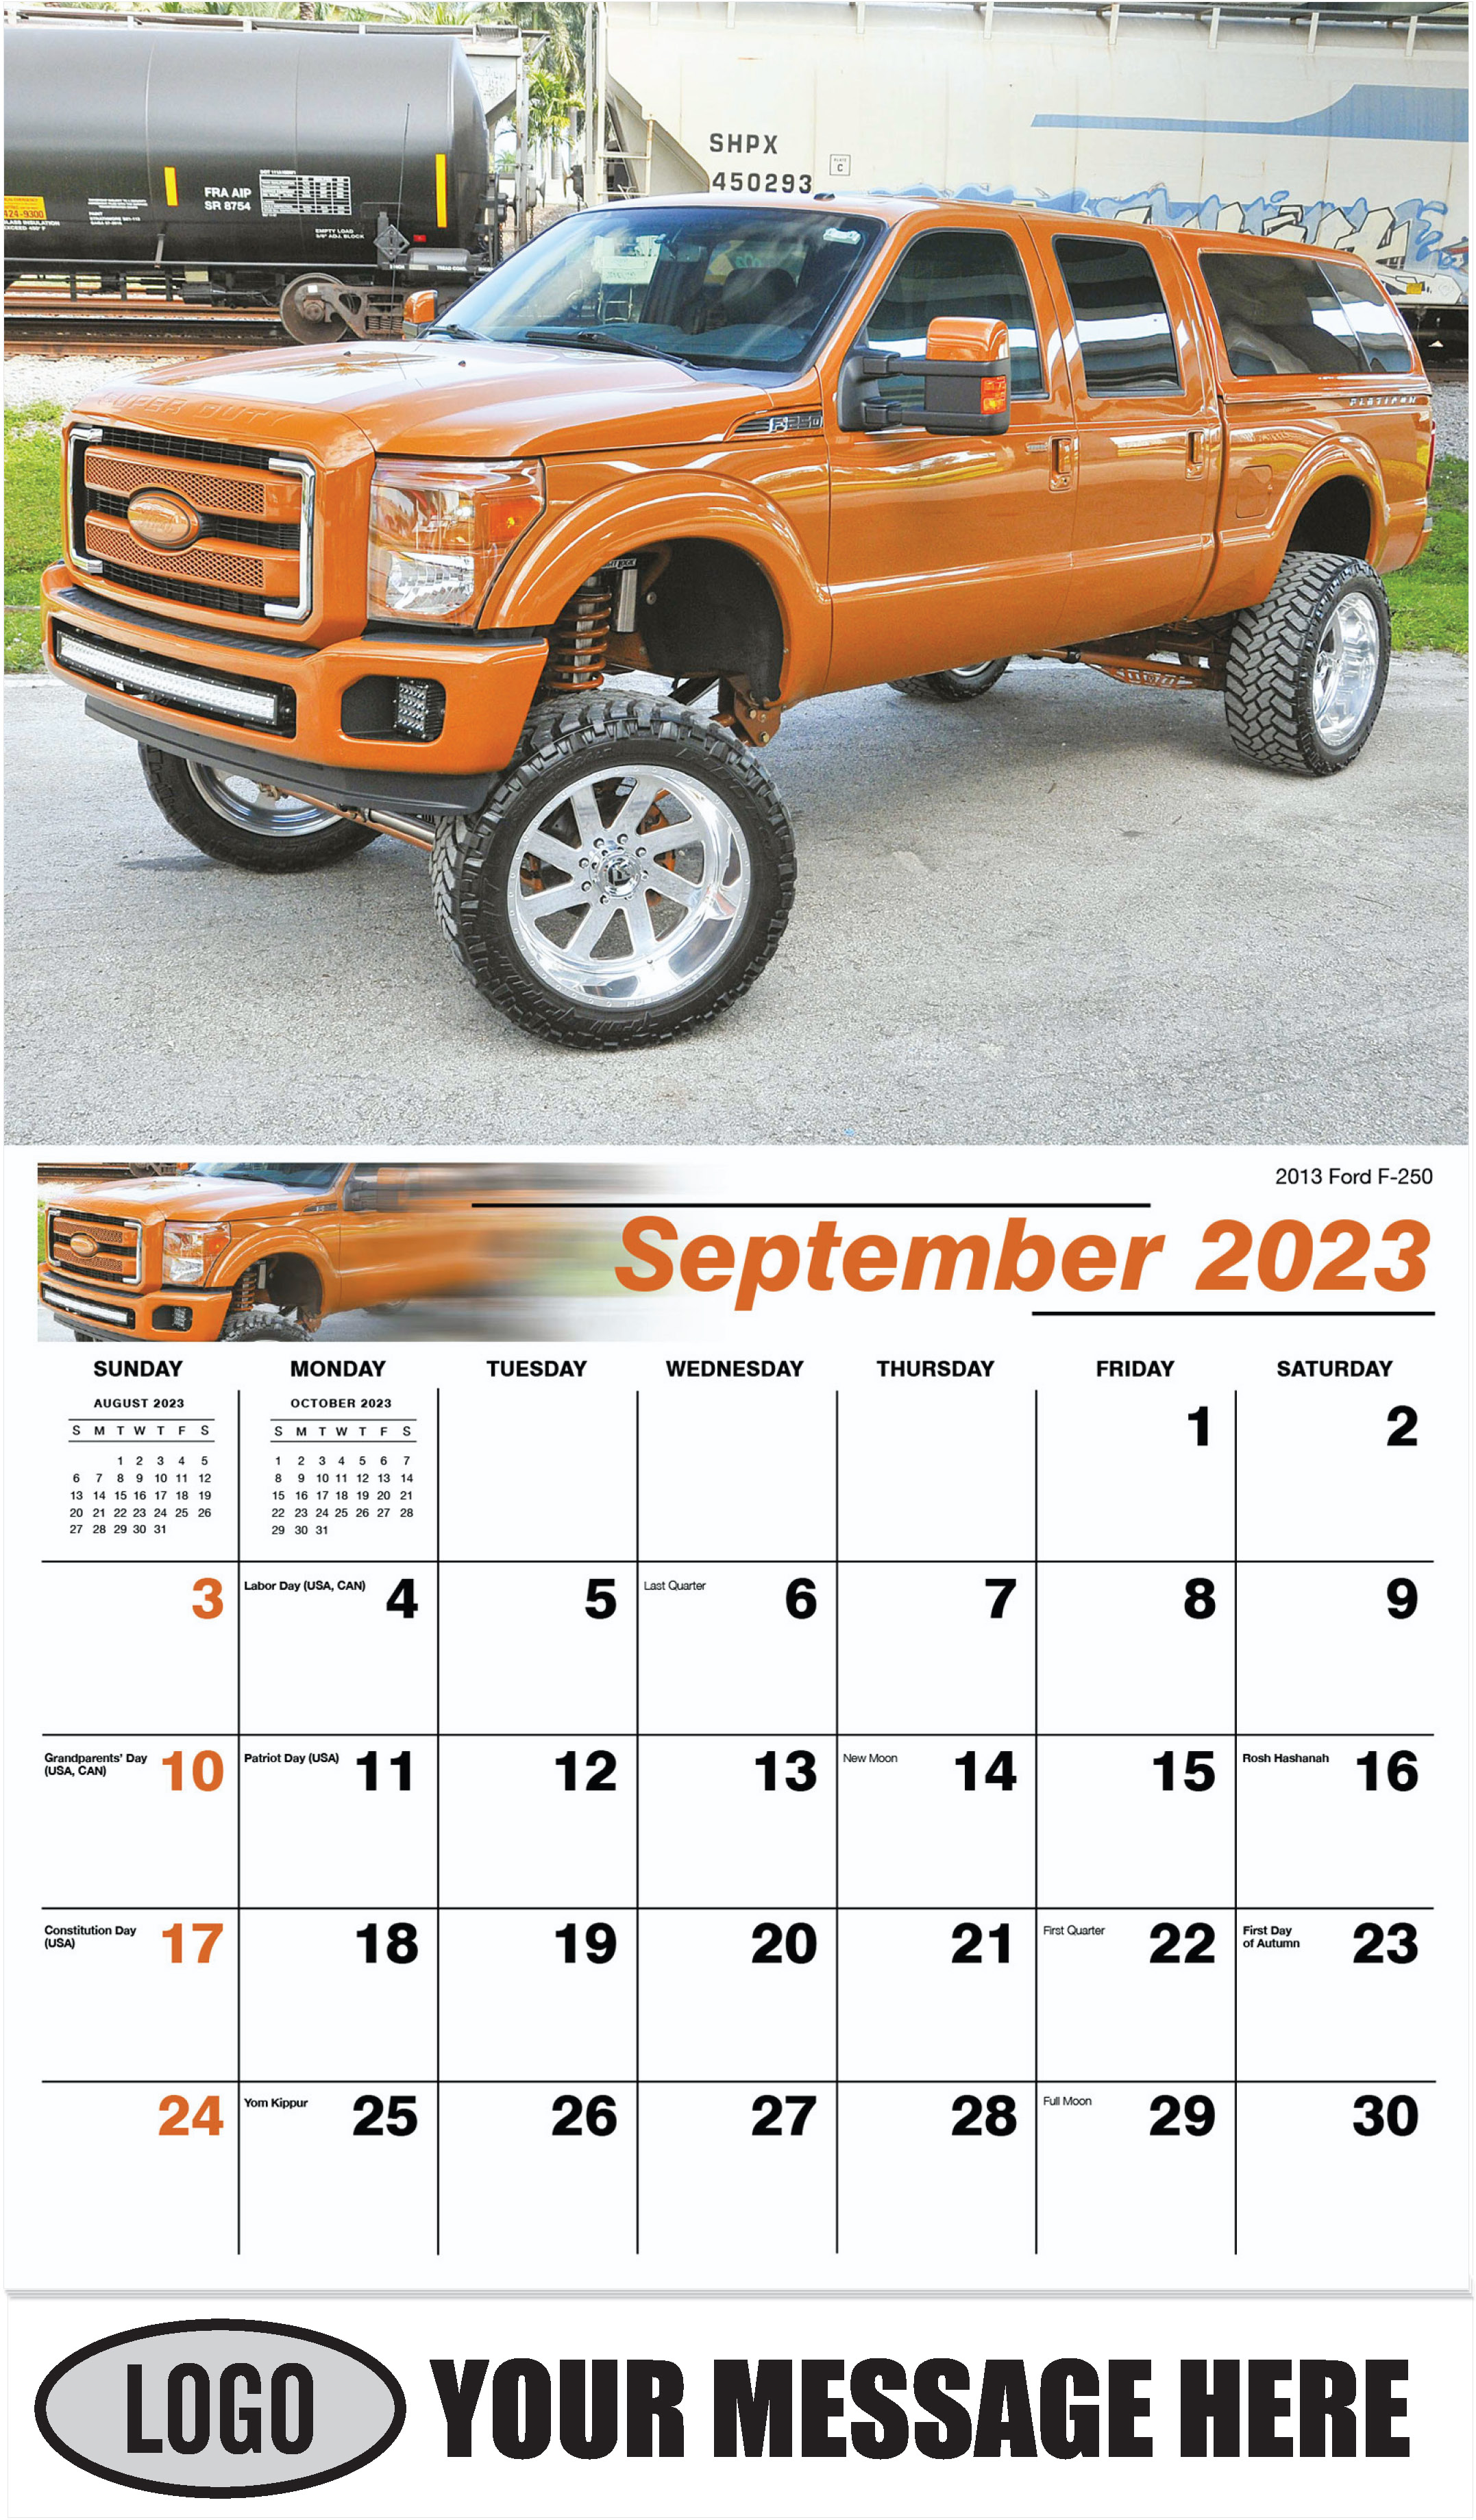 2013 Ford F-250 - September - Pumped Up Pickups 2023 Promotional Calendar